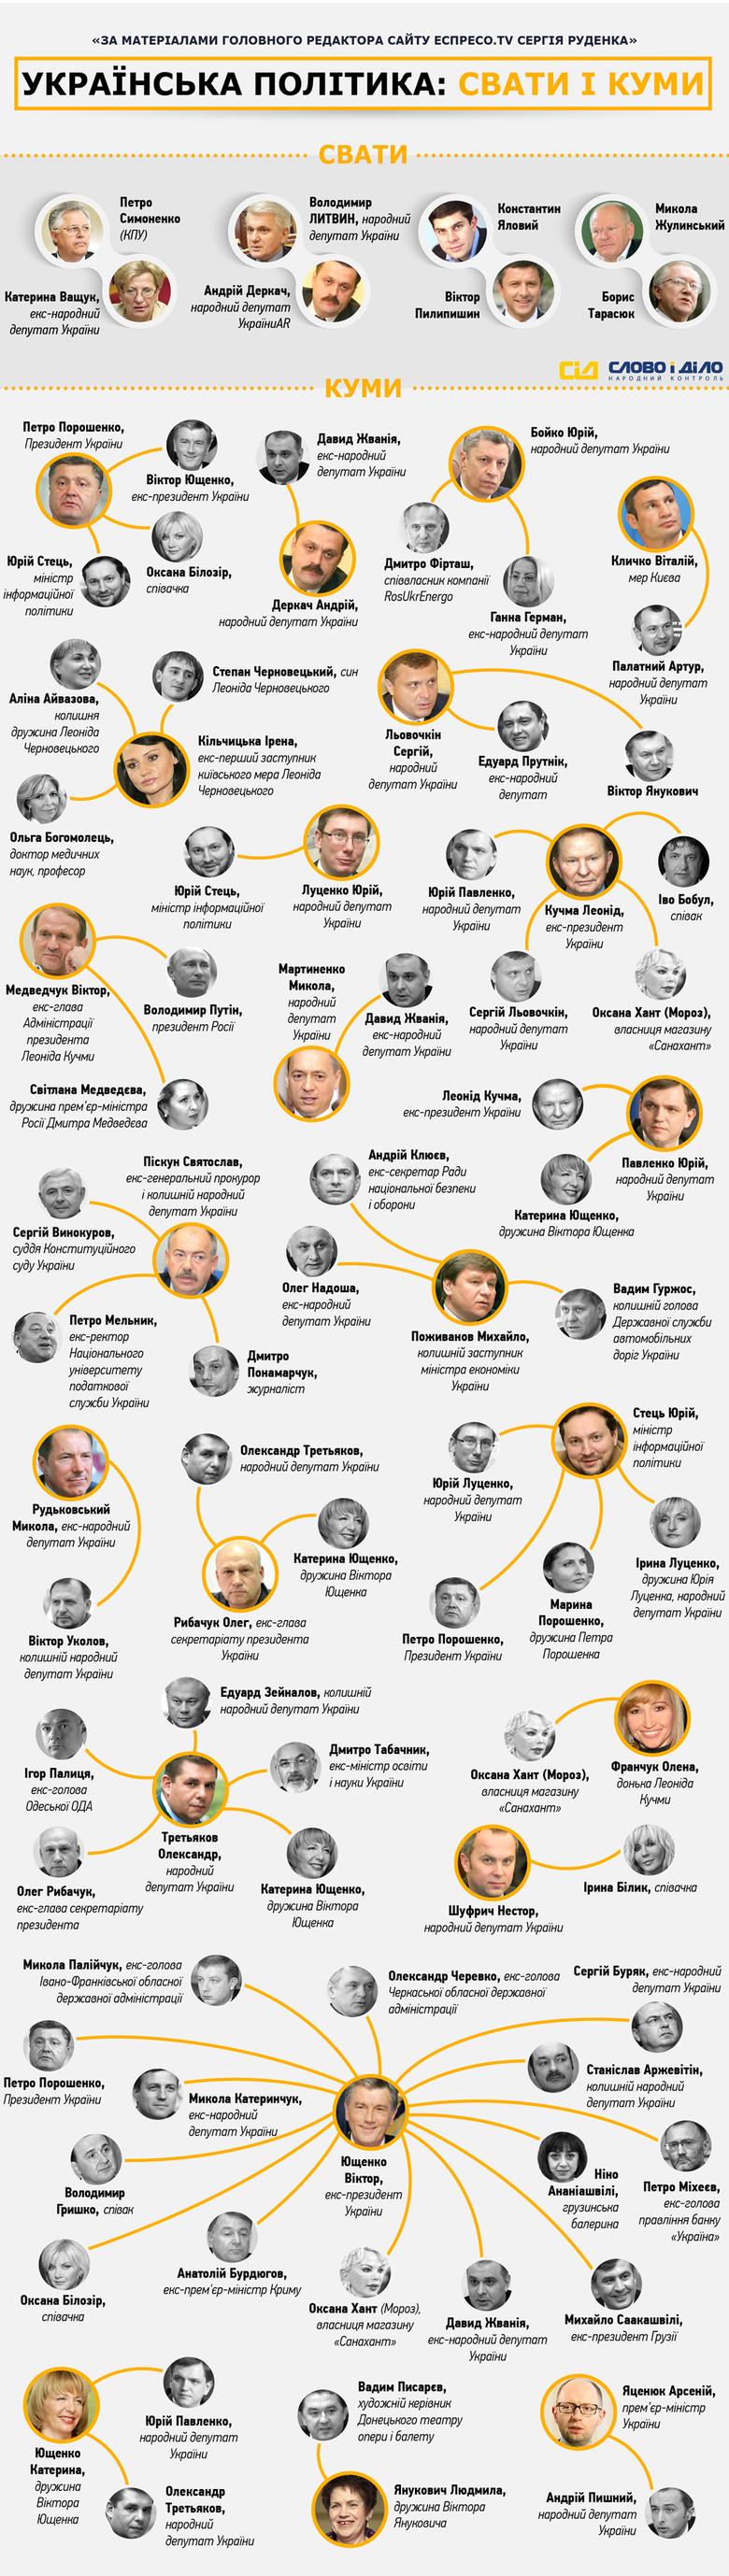 Журналисты «Слова и Дела» решили визуализировать материал главного редактора сайта «Еспресо.TV» Сергея Руденко, который составил список некровных связей в украинской политике.